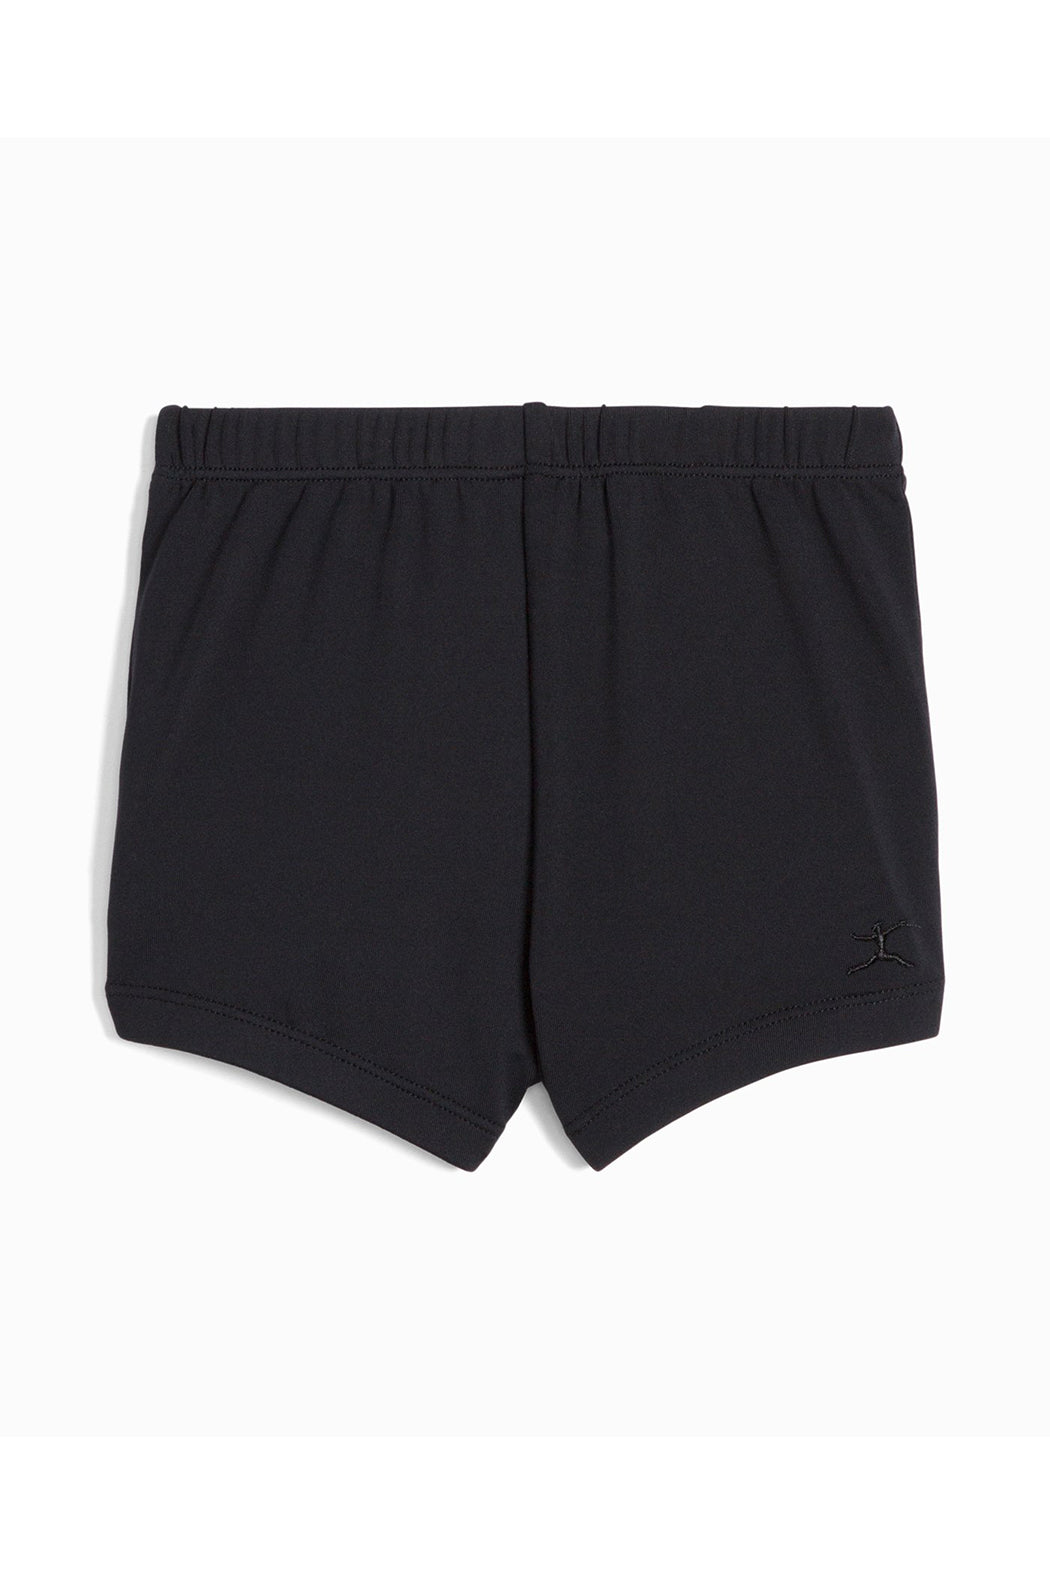 Danskin Boy Cut Shorts